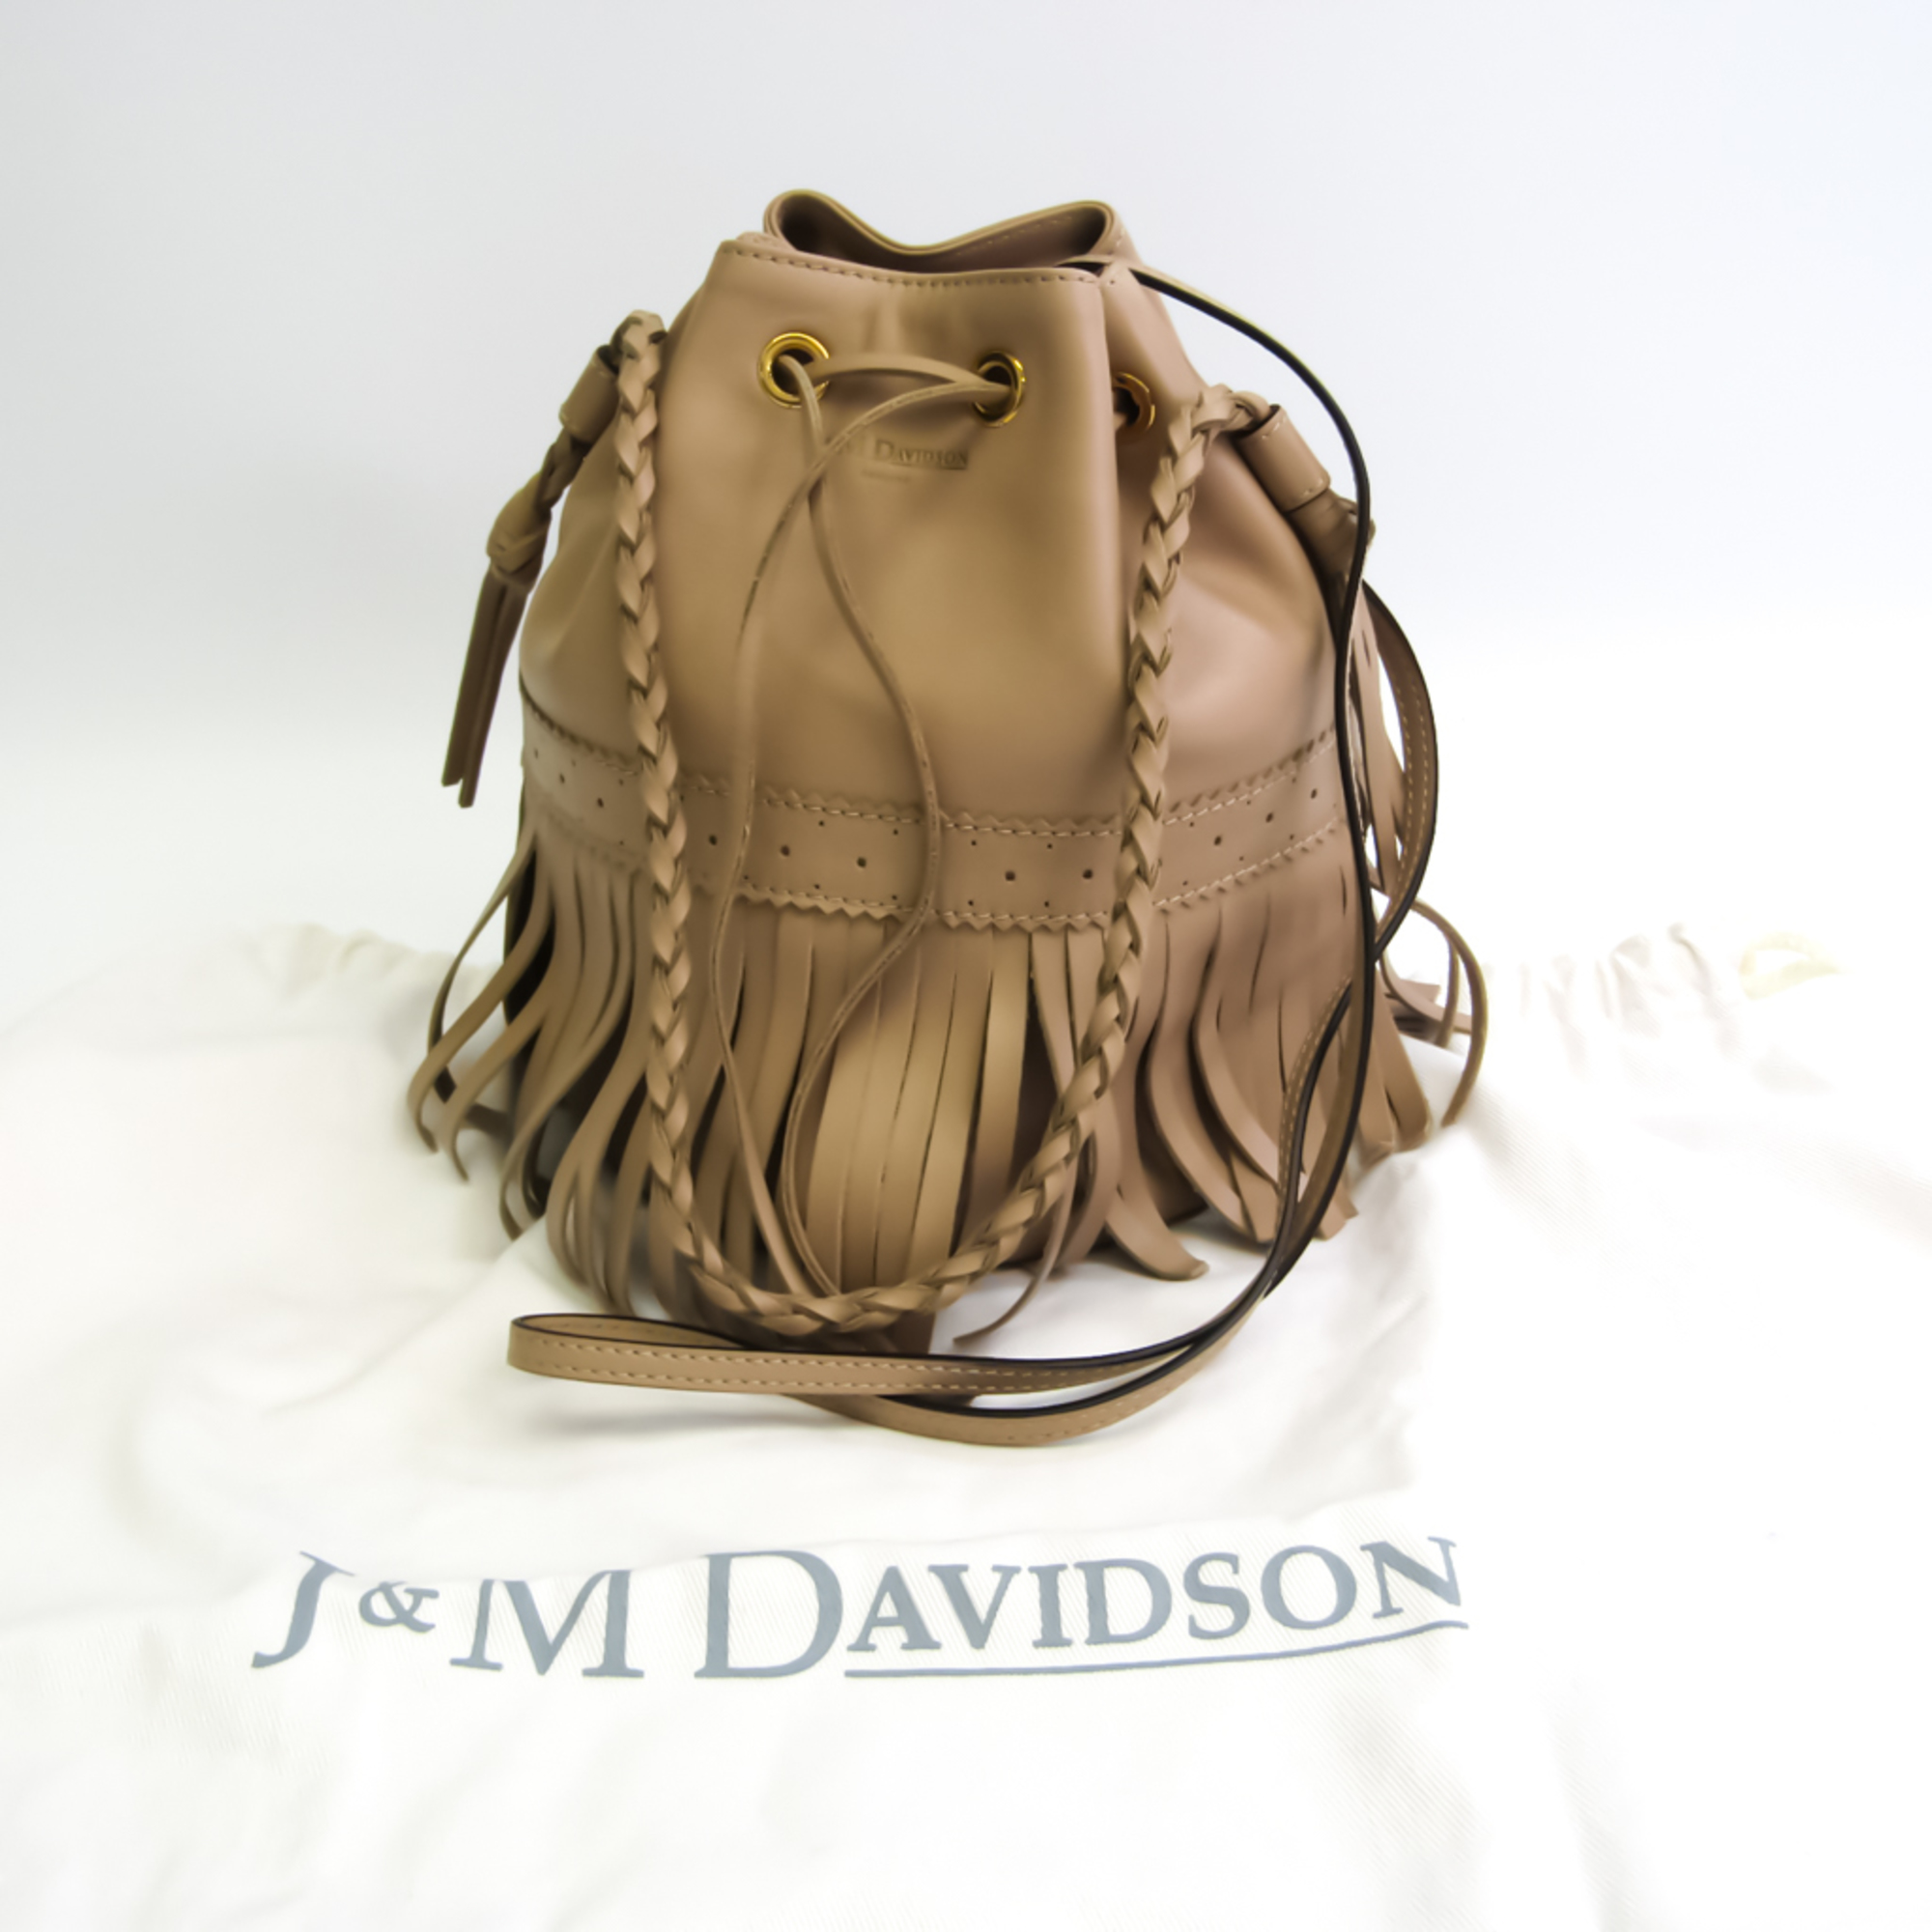 J&M Davidson Carnival 01355 Women's Leather Handbag,Shoulder Bag Beige